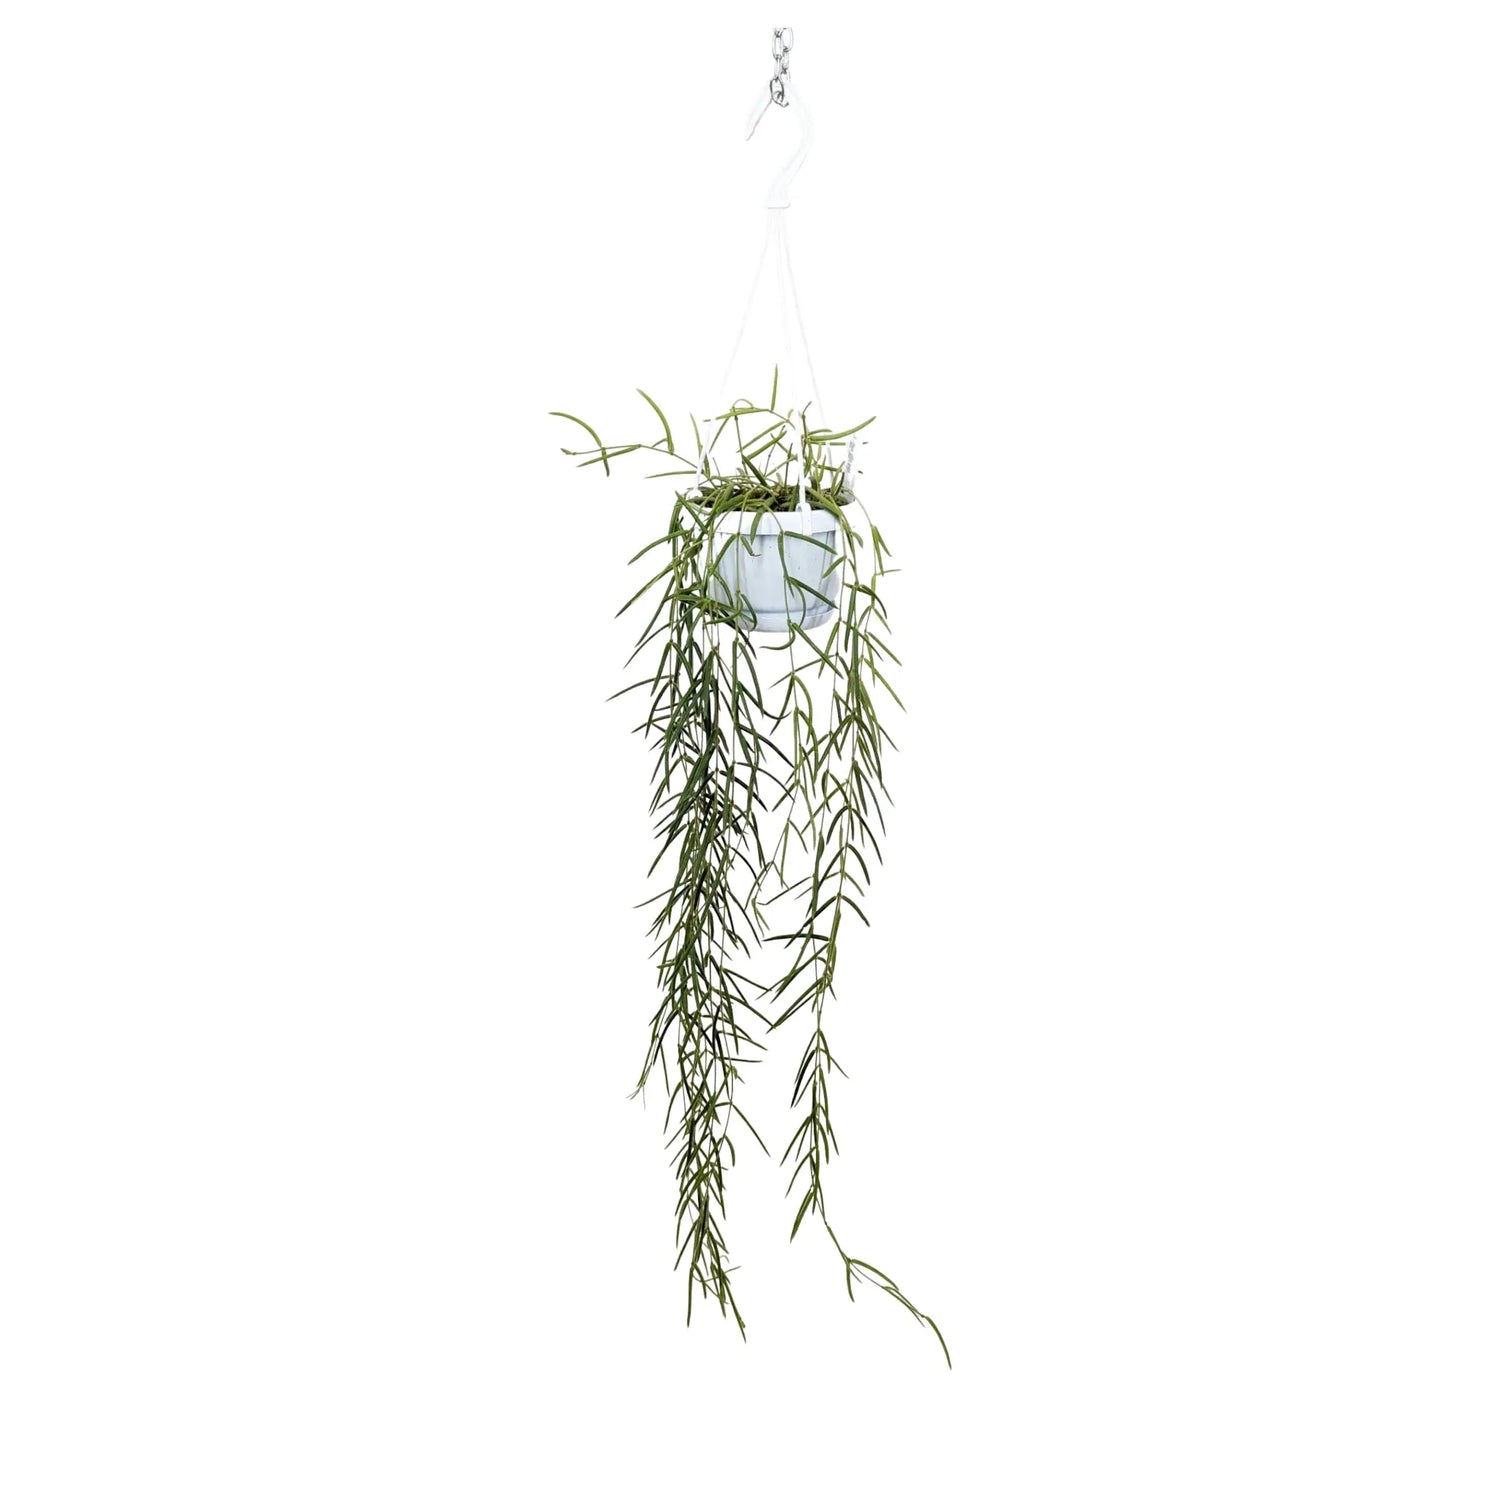 Hoya linearis Hanging Plant - Porcelain Vine Leaf Culture